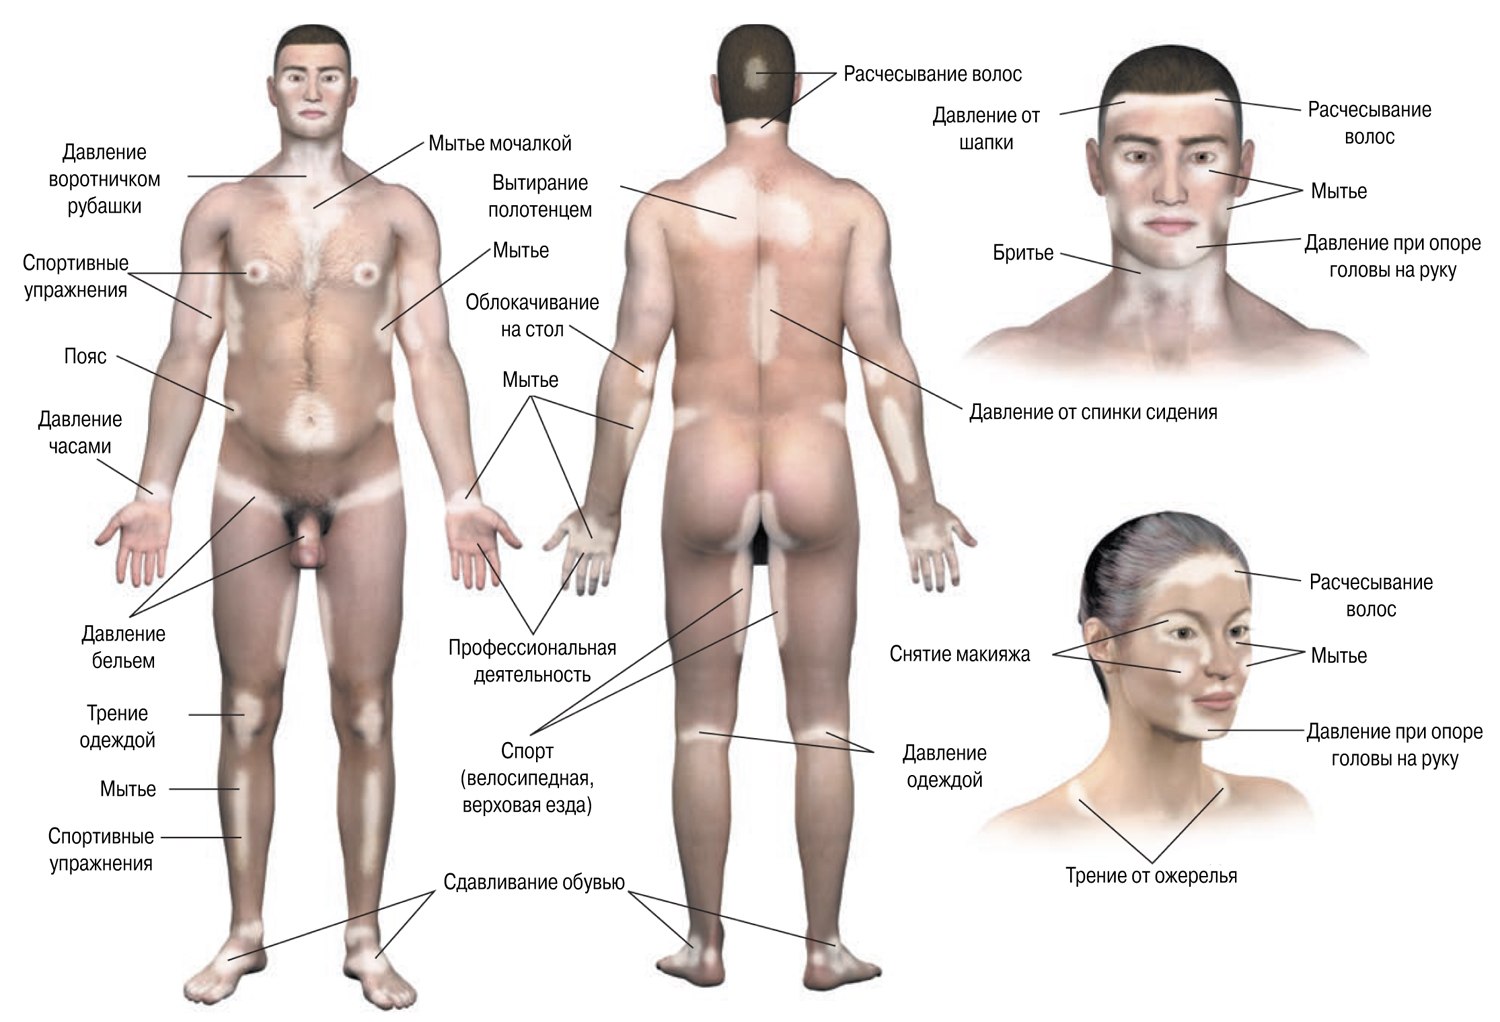 Появление пятен витилиго в ответ на трение или давление на кожу